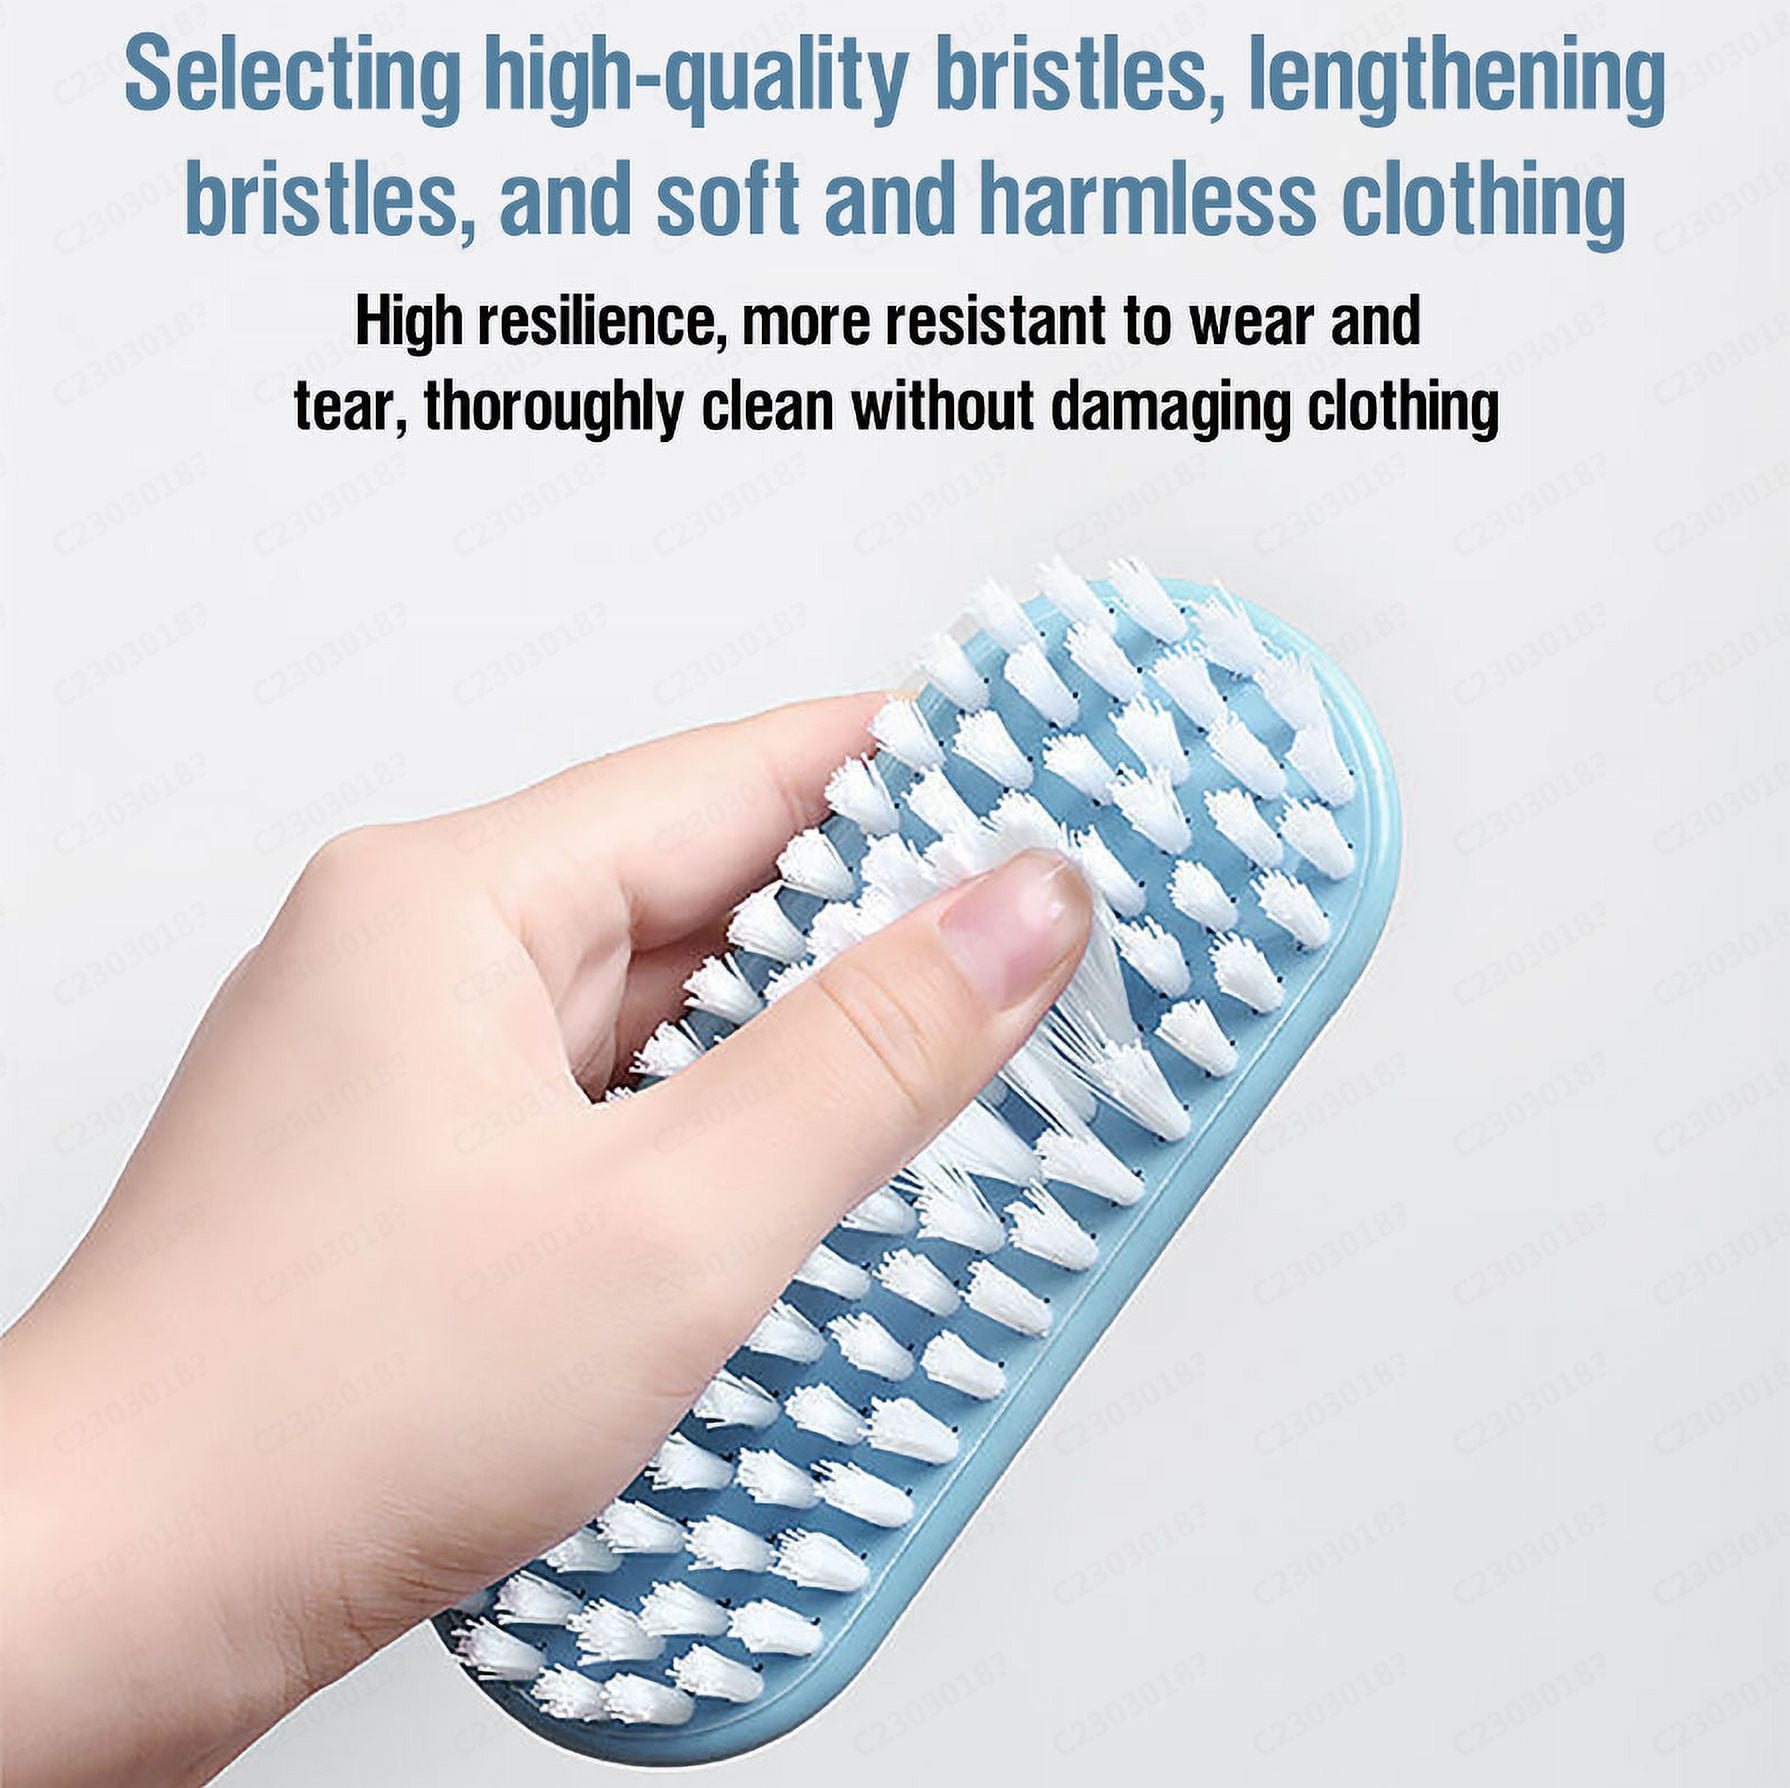 Xmmswdla Brushes Household Plastic Laundry Brush Cleaning Brush Hard Bristle Multi-functional Washbasin Brush Shoe Brush Clothes Board Brush Cleaning